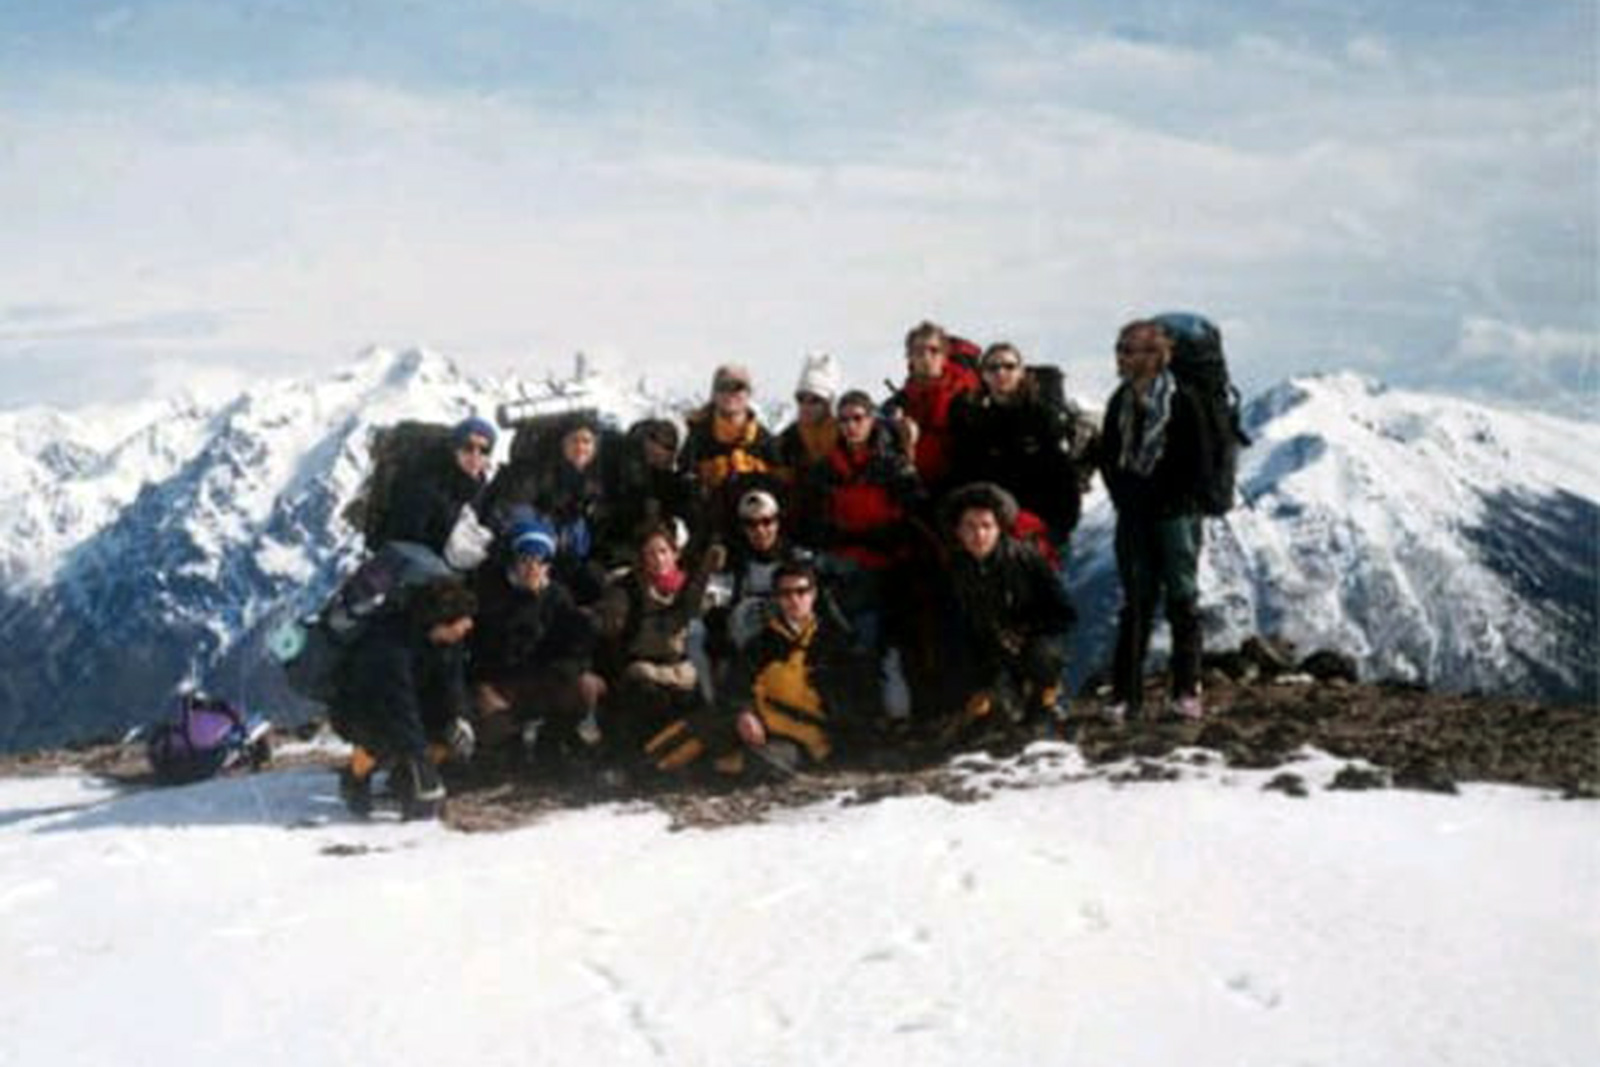 grupo-avalancha-cerro-ventana-bariloche-patagonia-lugares-de-aventura-lugares-de-nieve.jpg